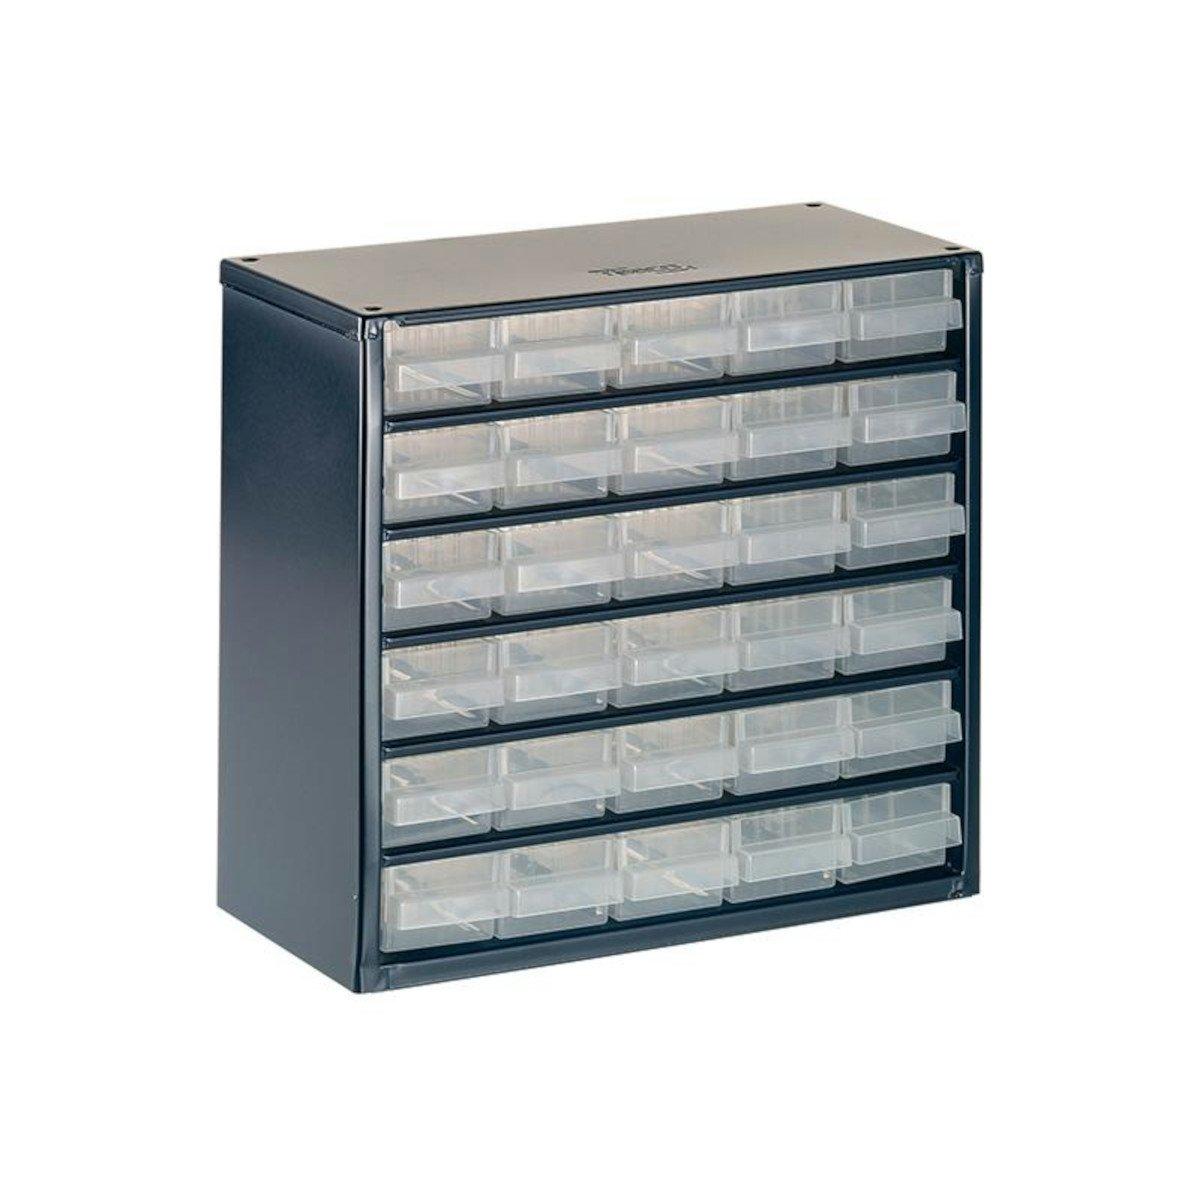 '624-01' Metal Cabinet 24 Drawer